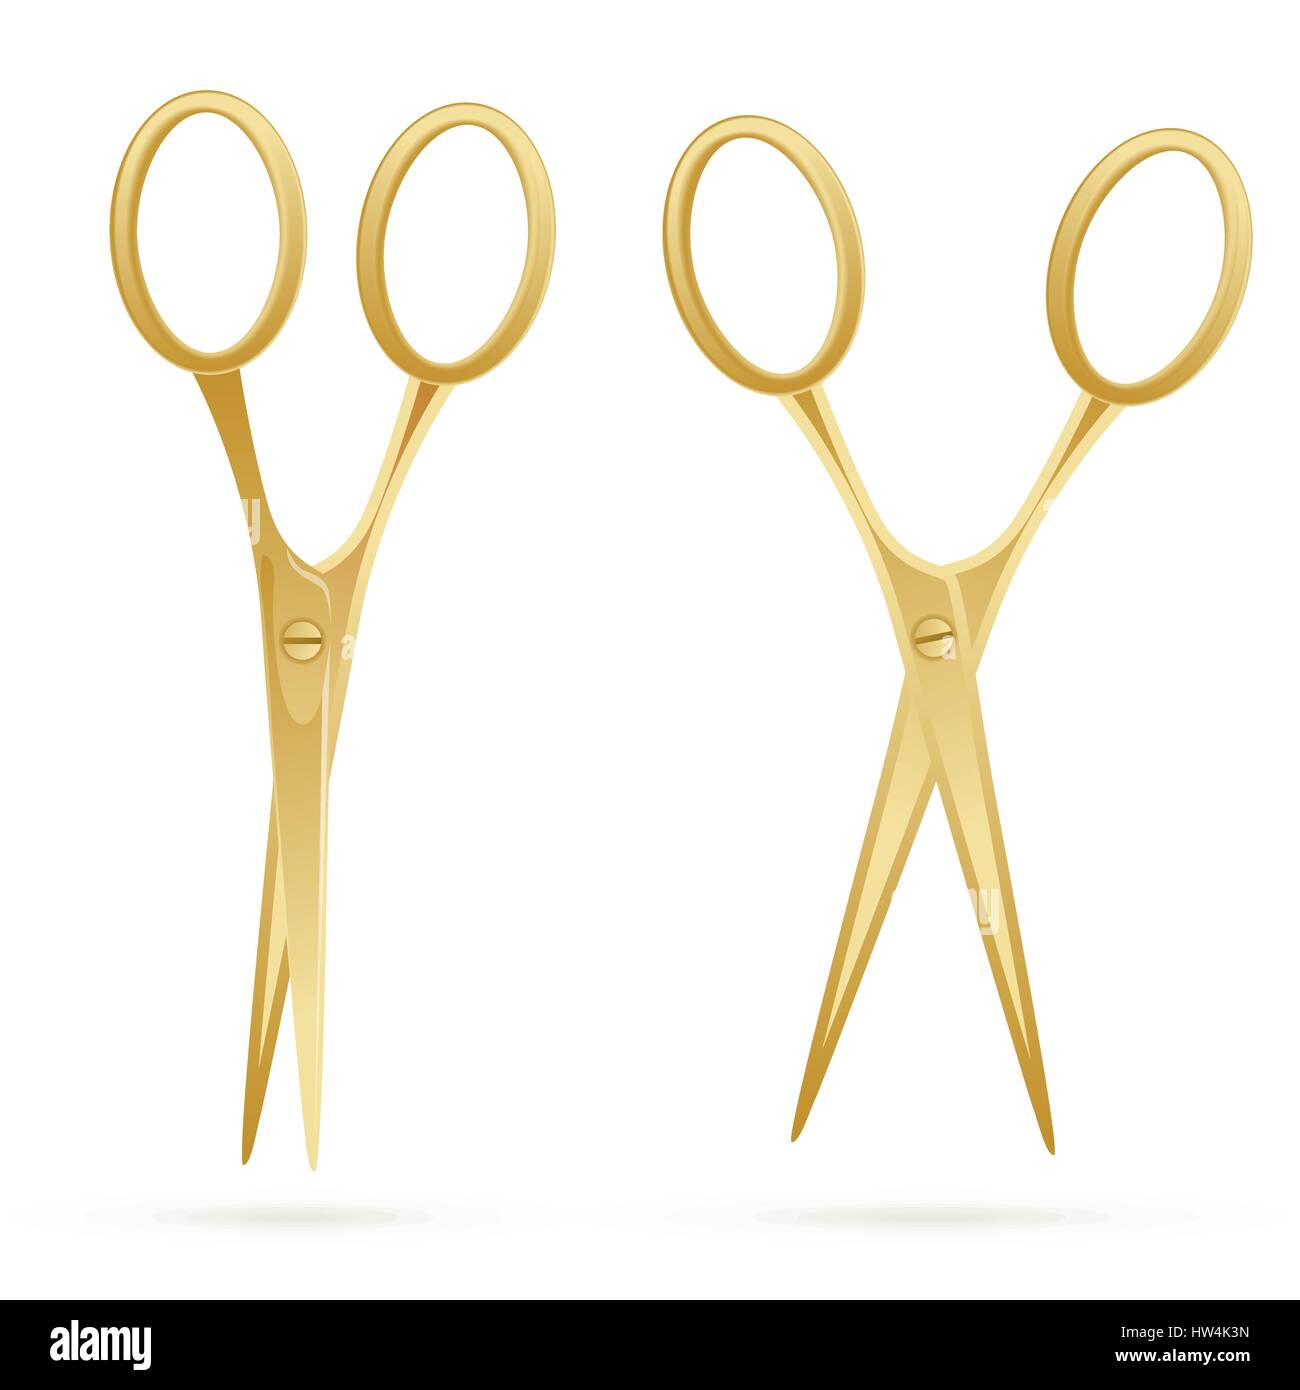 Golden Scissors Isolated on White Background. Vector Illustration. Stock Vector